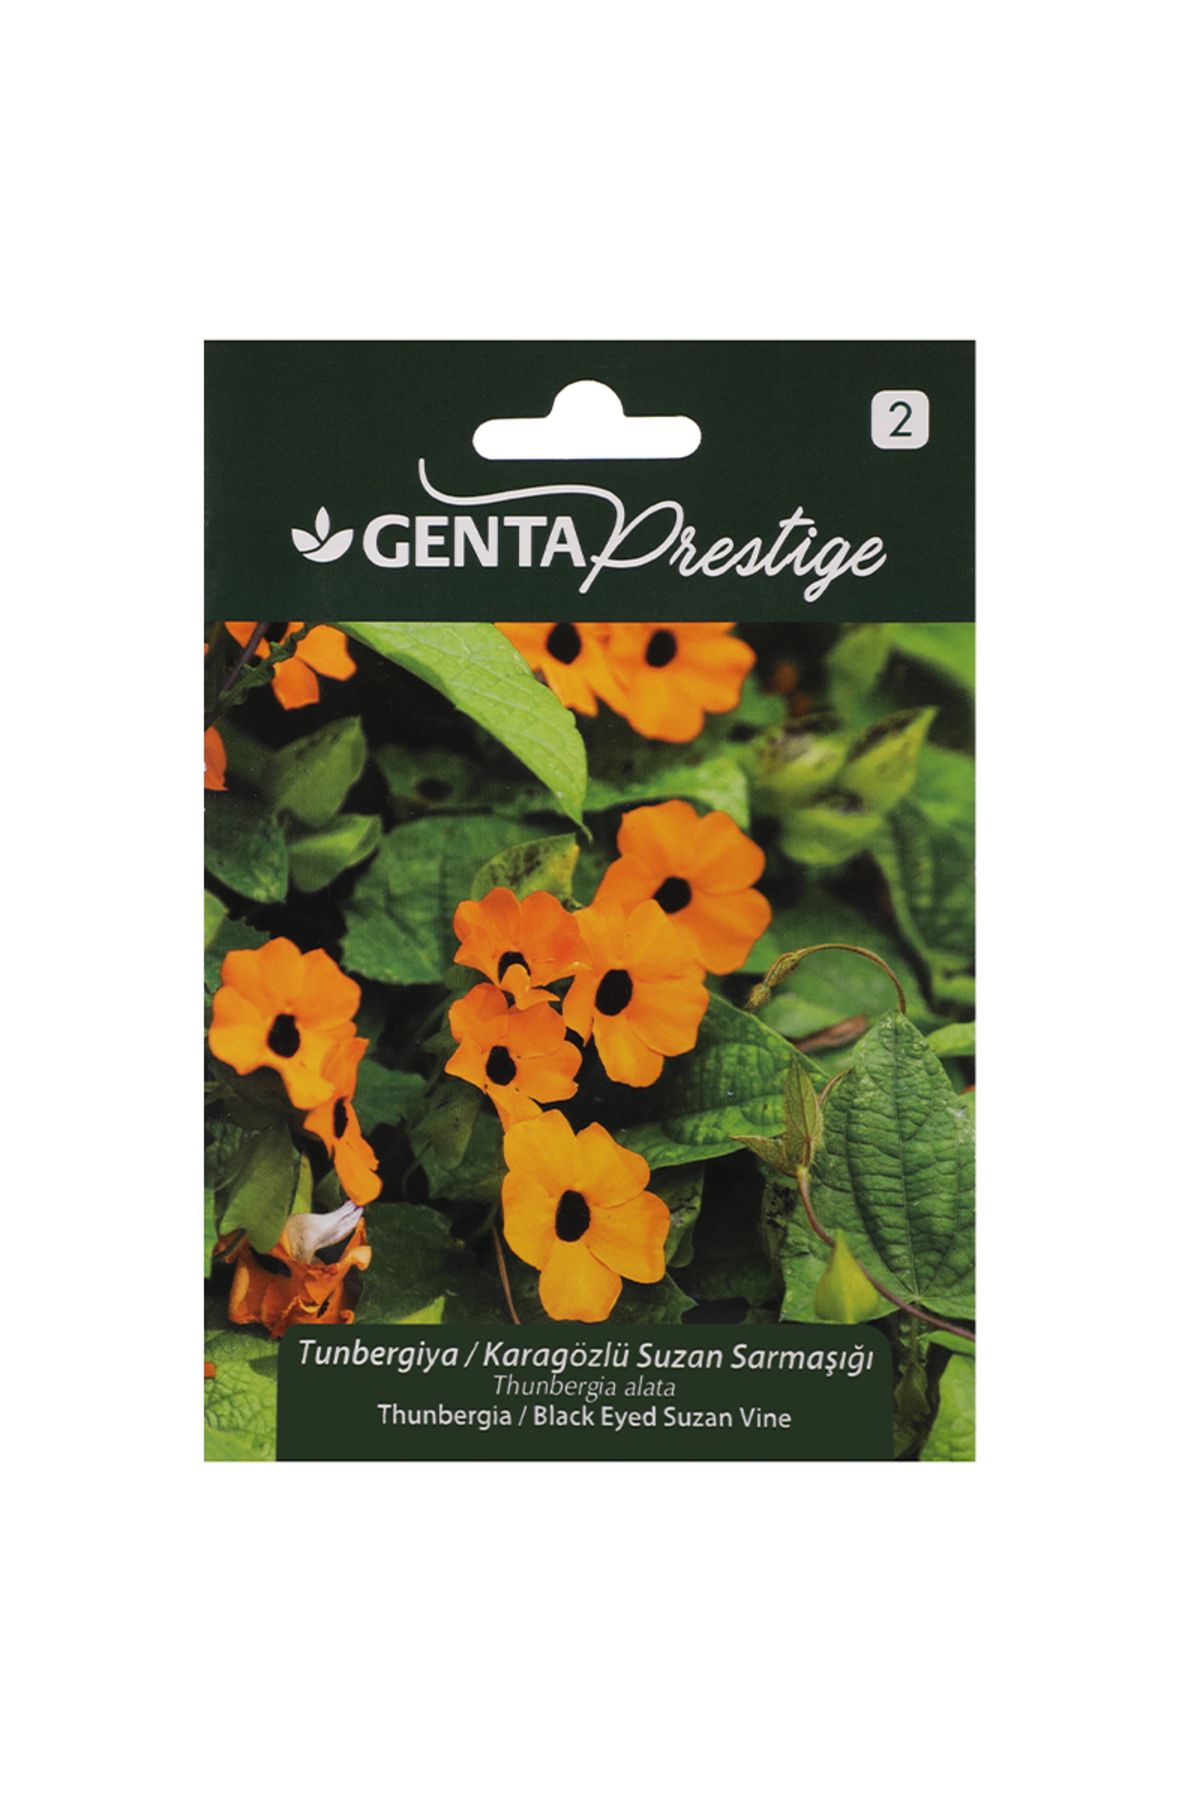 Genta Prestige Çiçek Tohumu Tunbergiya - Karagözlü Suzan Sarmaşığı